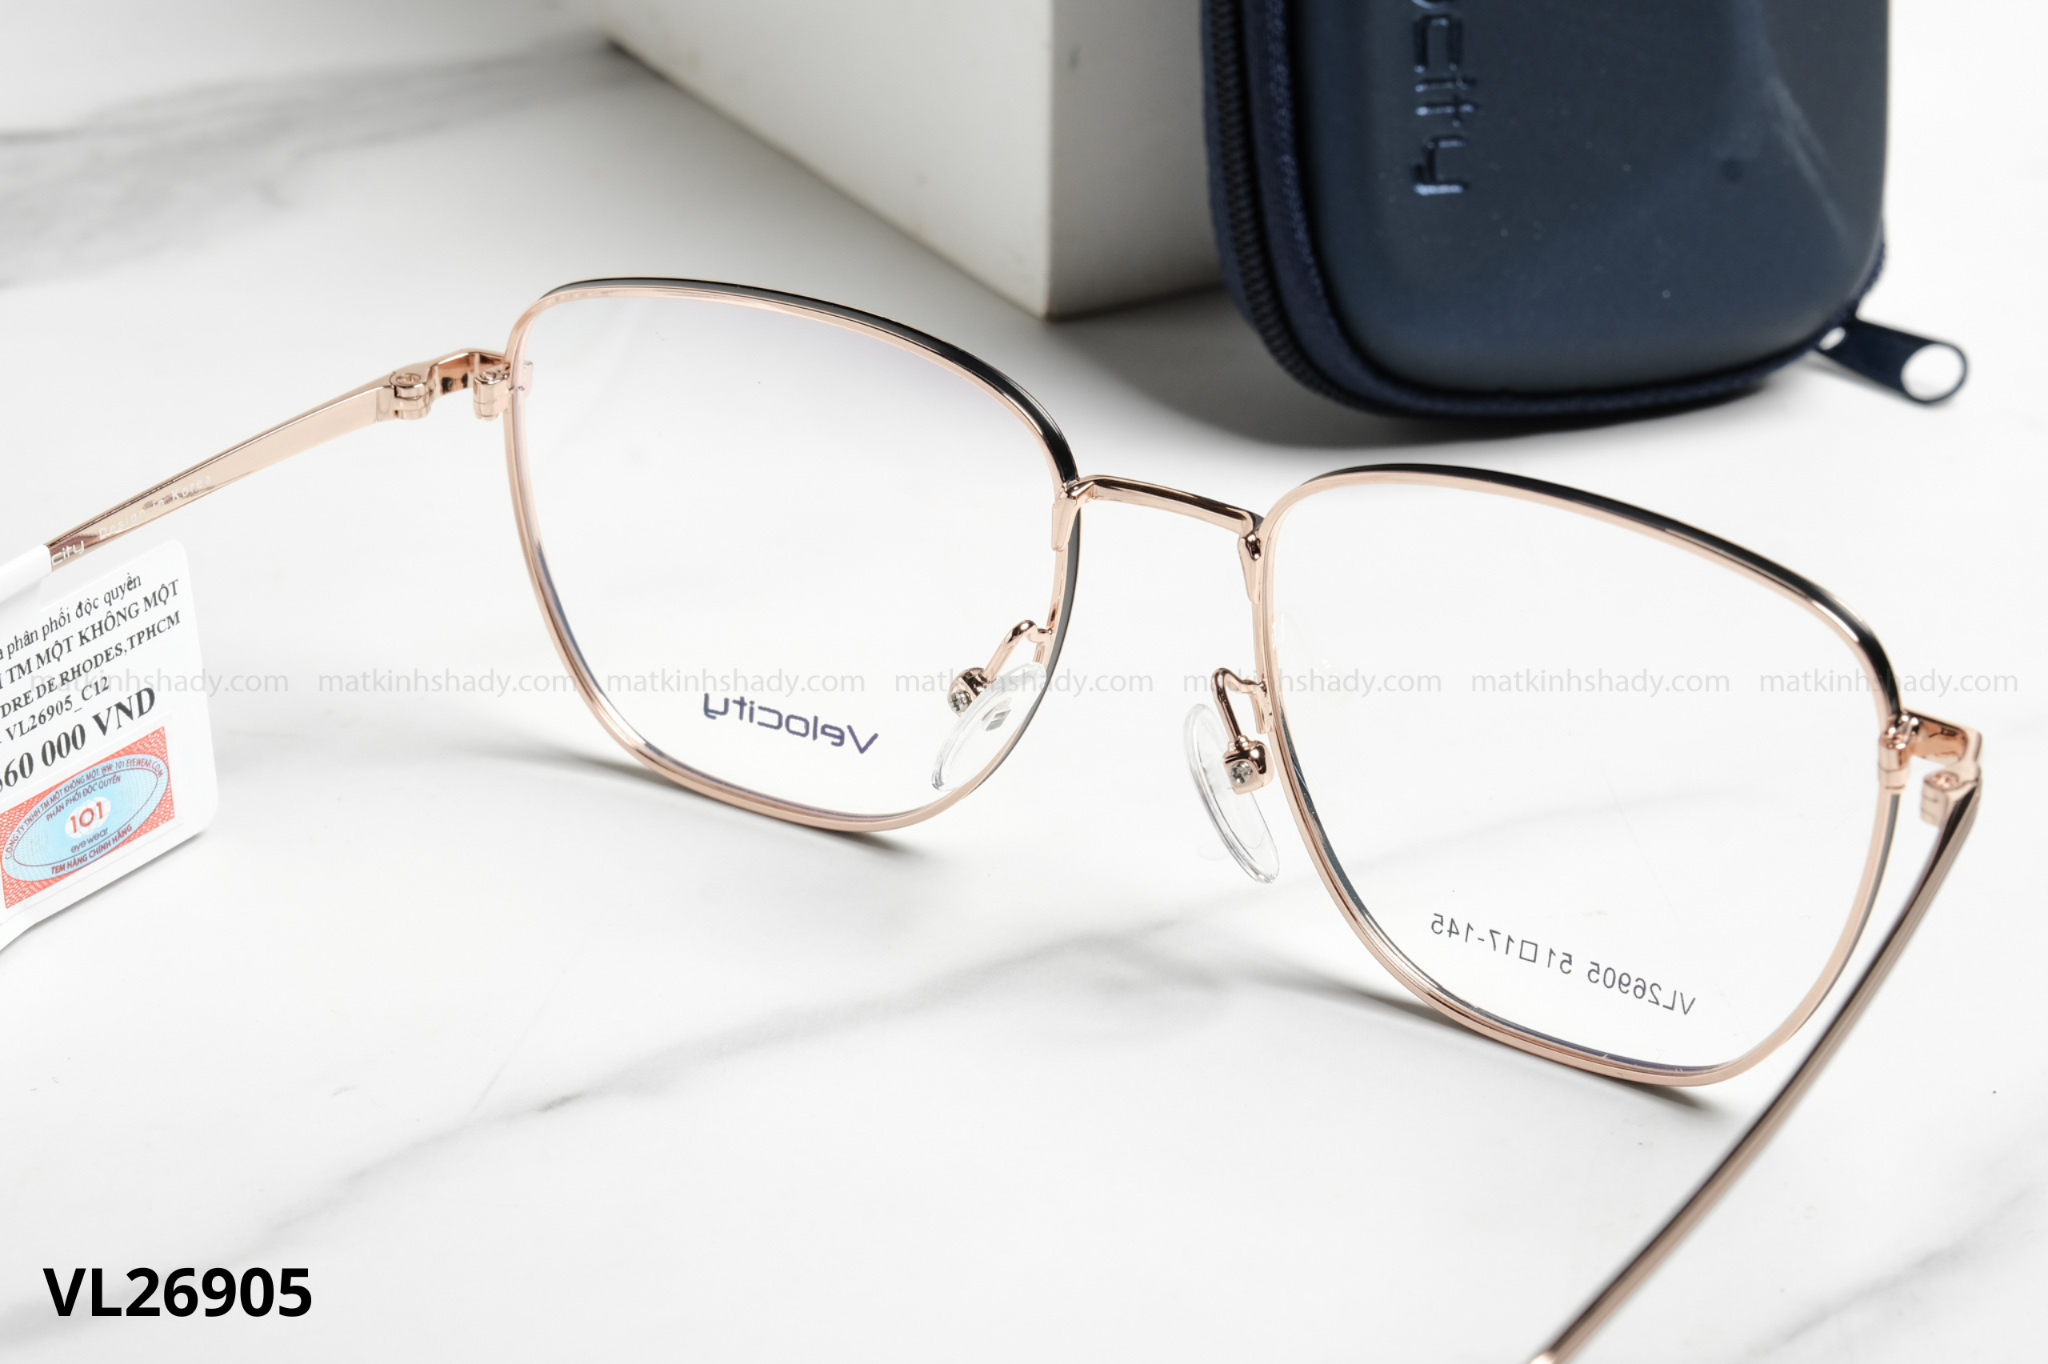  Velocity Eyewear - Glasses - VL26905 